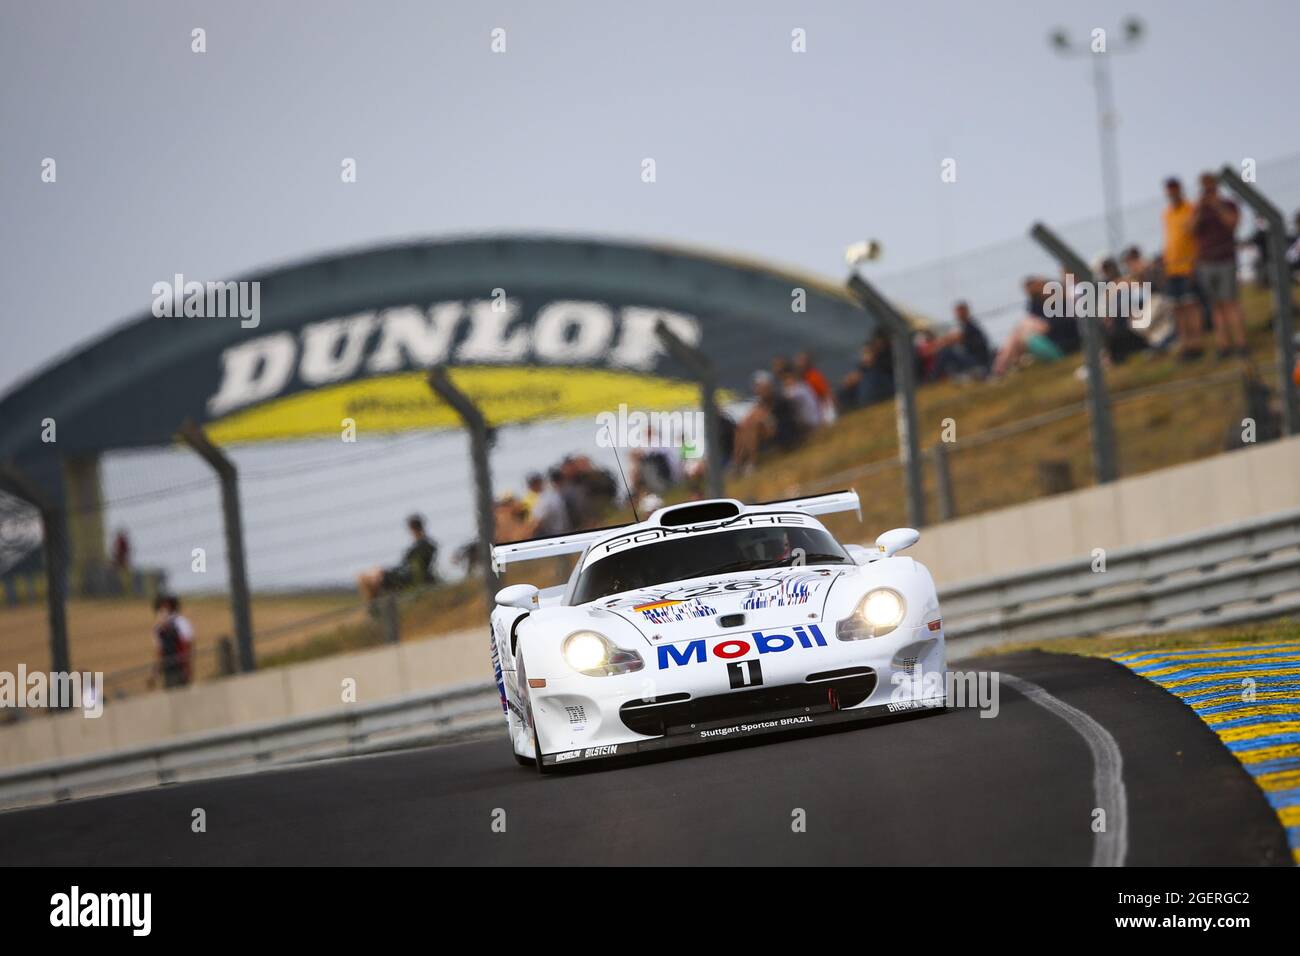 26 Collard Emmanuel (FRA), Porsche 911 GT1, action pendant les légendes de course d'endurance 2021 sur le circuit des 24 heures du Mans, du 18 au 21 août 2021 au Mans, France - photo Joao Filipe / DPPI Banque D'Images